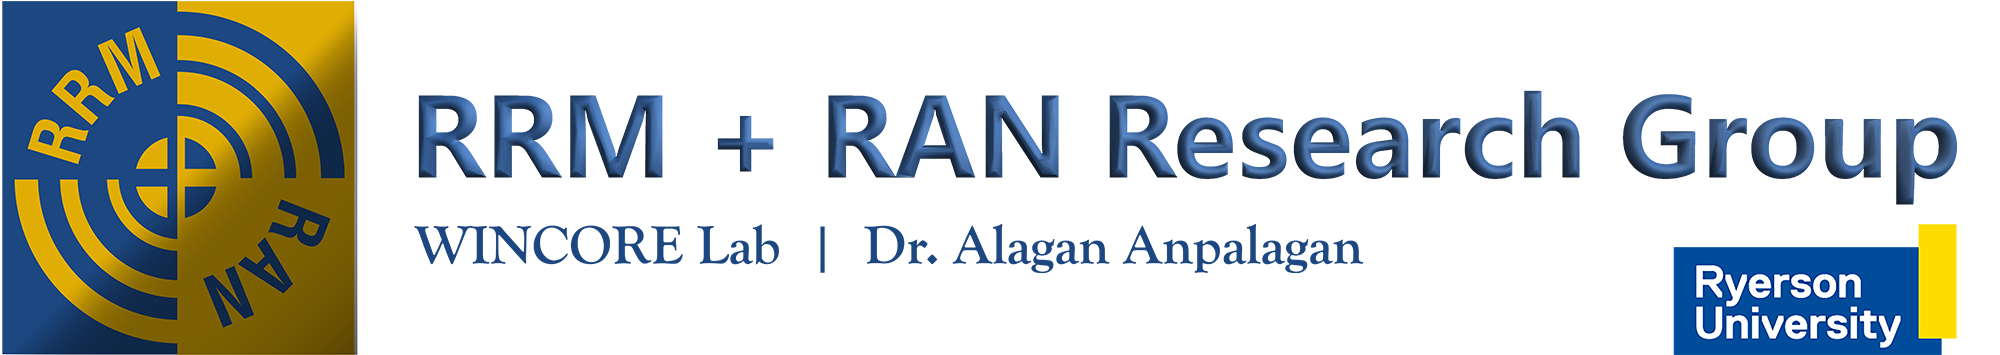 Dr. Alagan Anpalagan, RRM & RAN Research Group Website